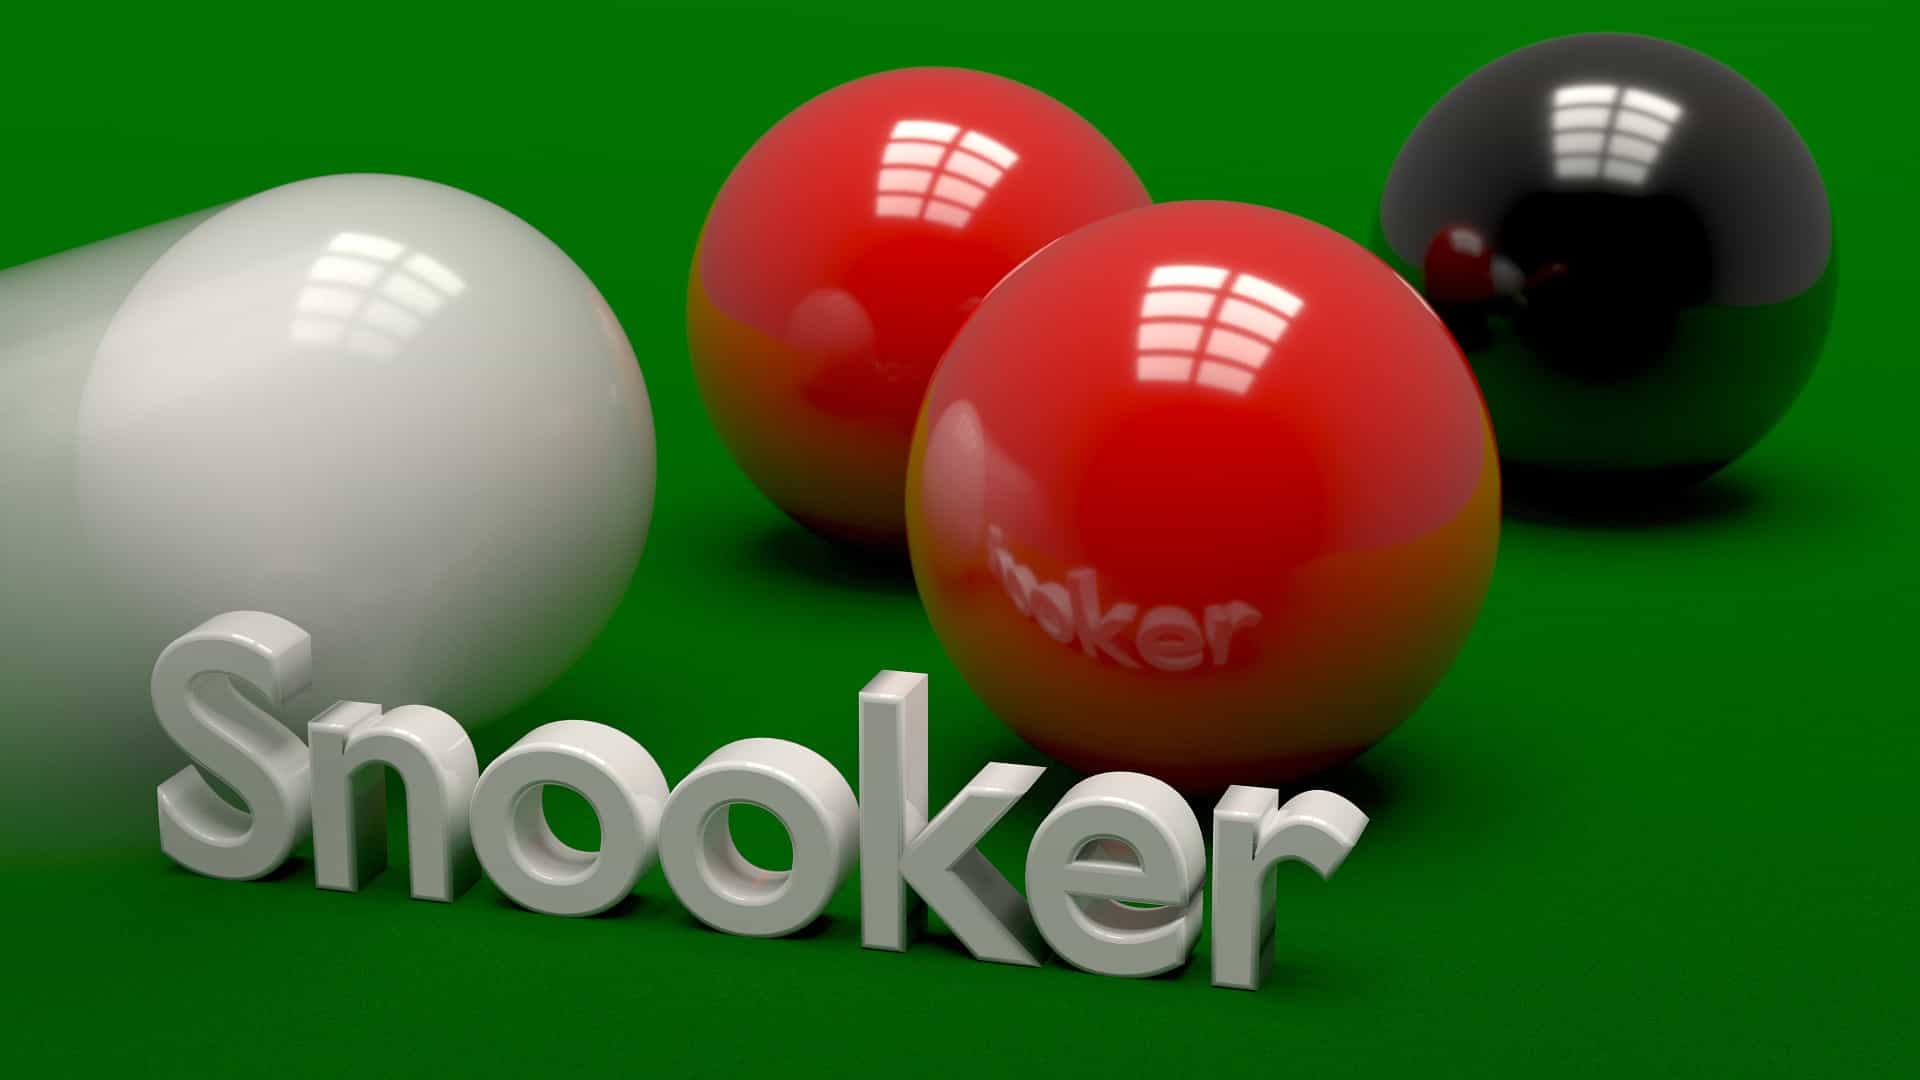 Snooker-Kugeln und ein Snooker-Schriftzug